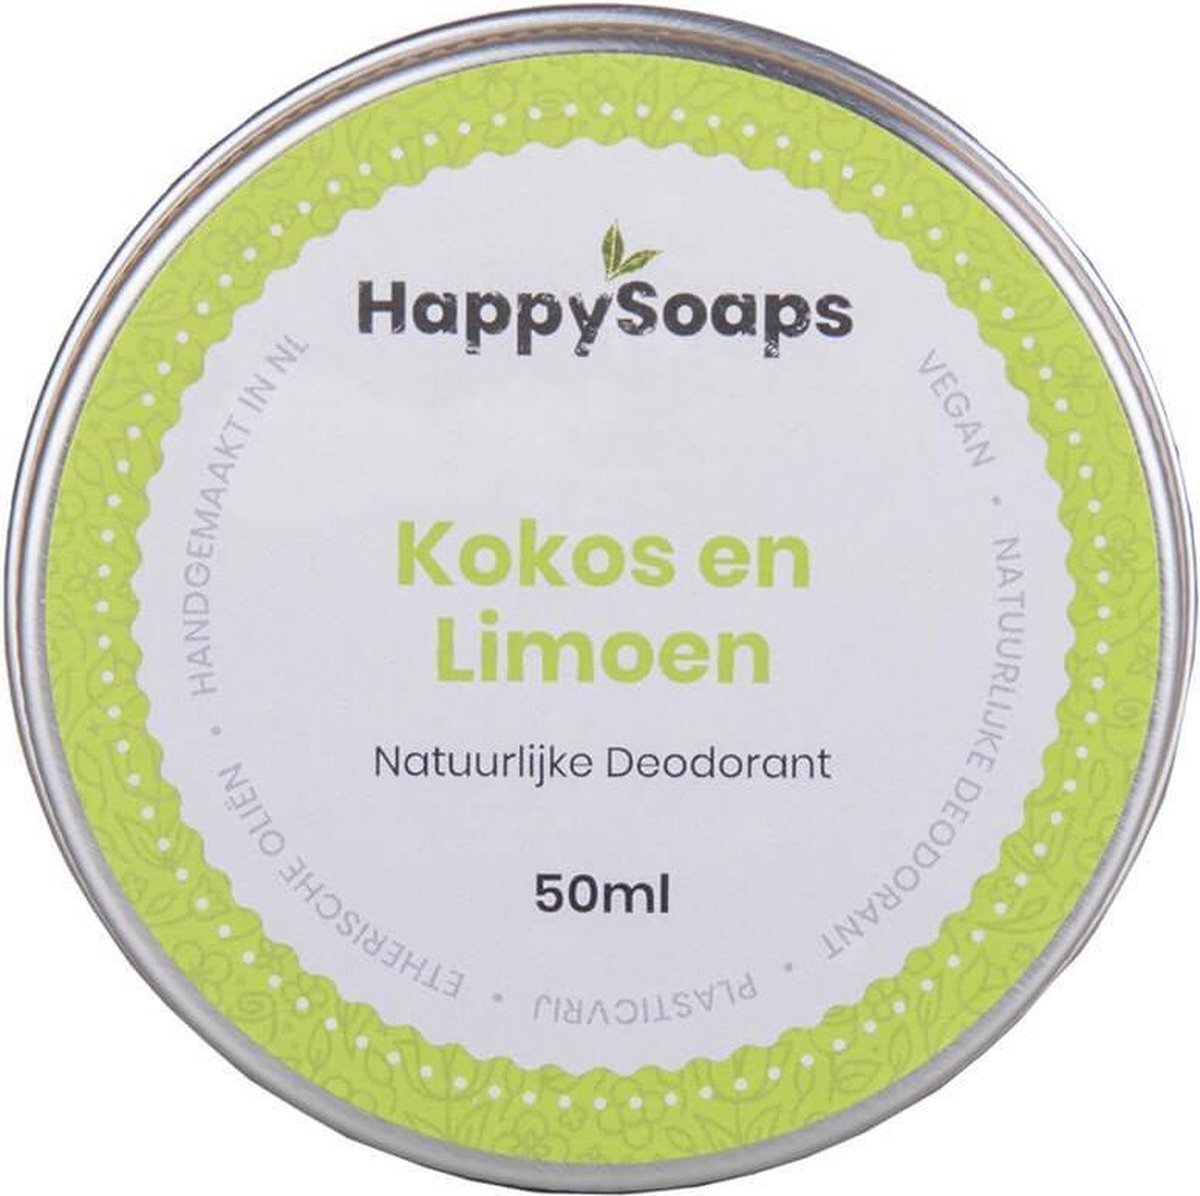 HappySoaps Natuurlijke Deodorant - Kokos en Limoen